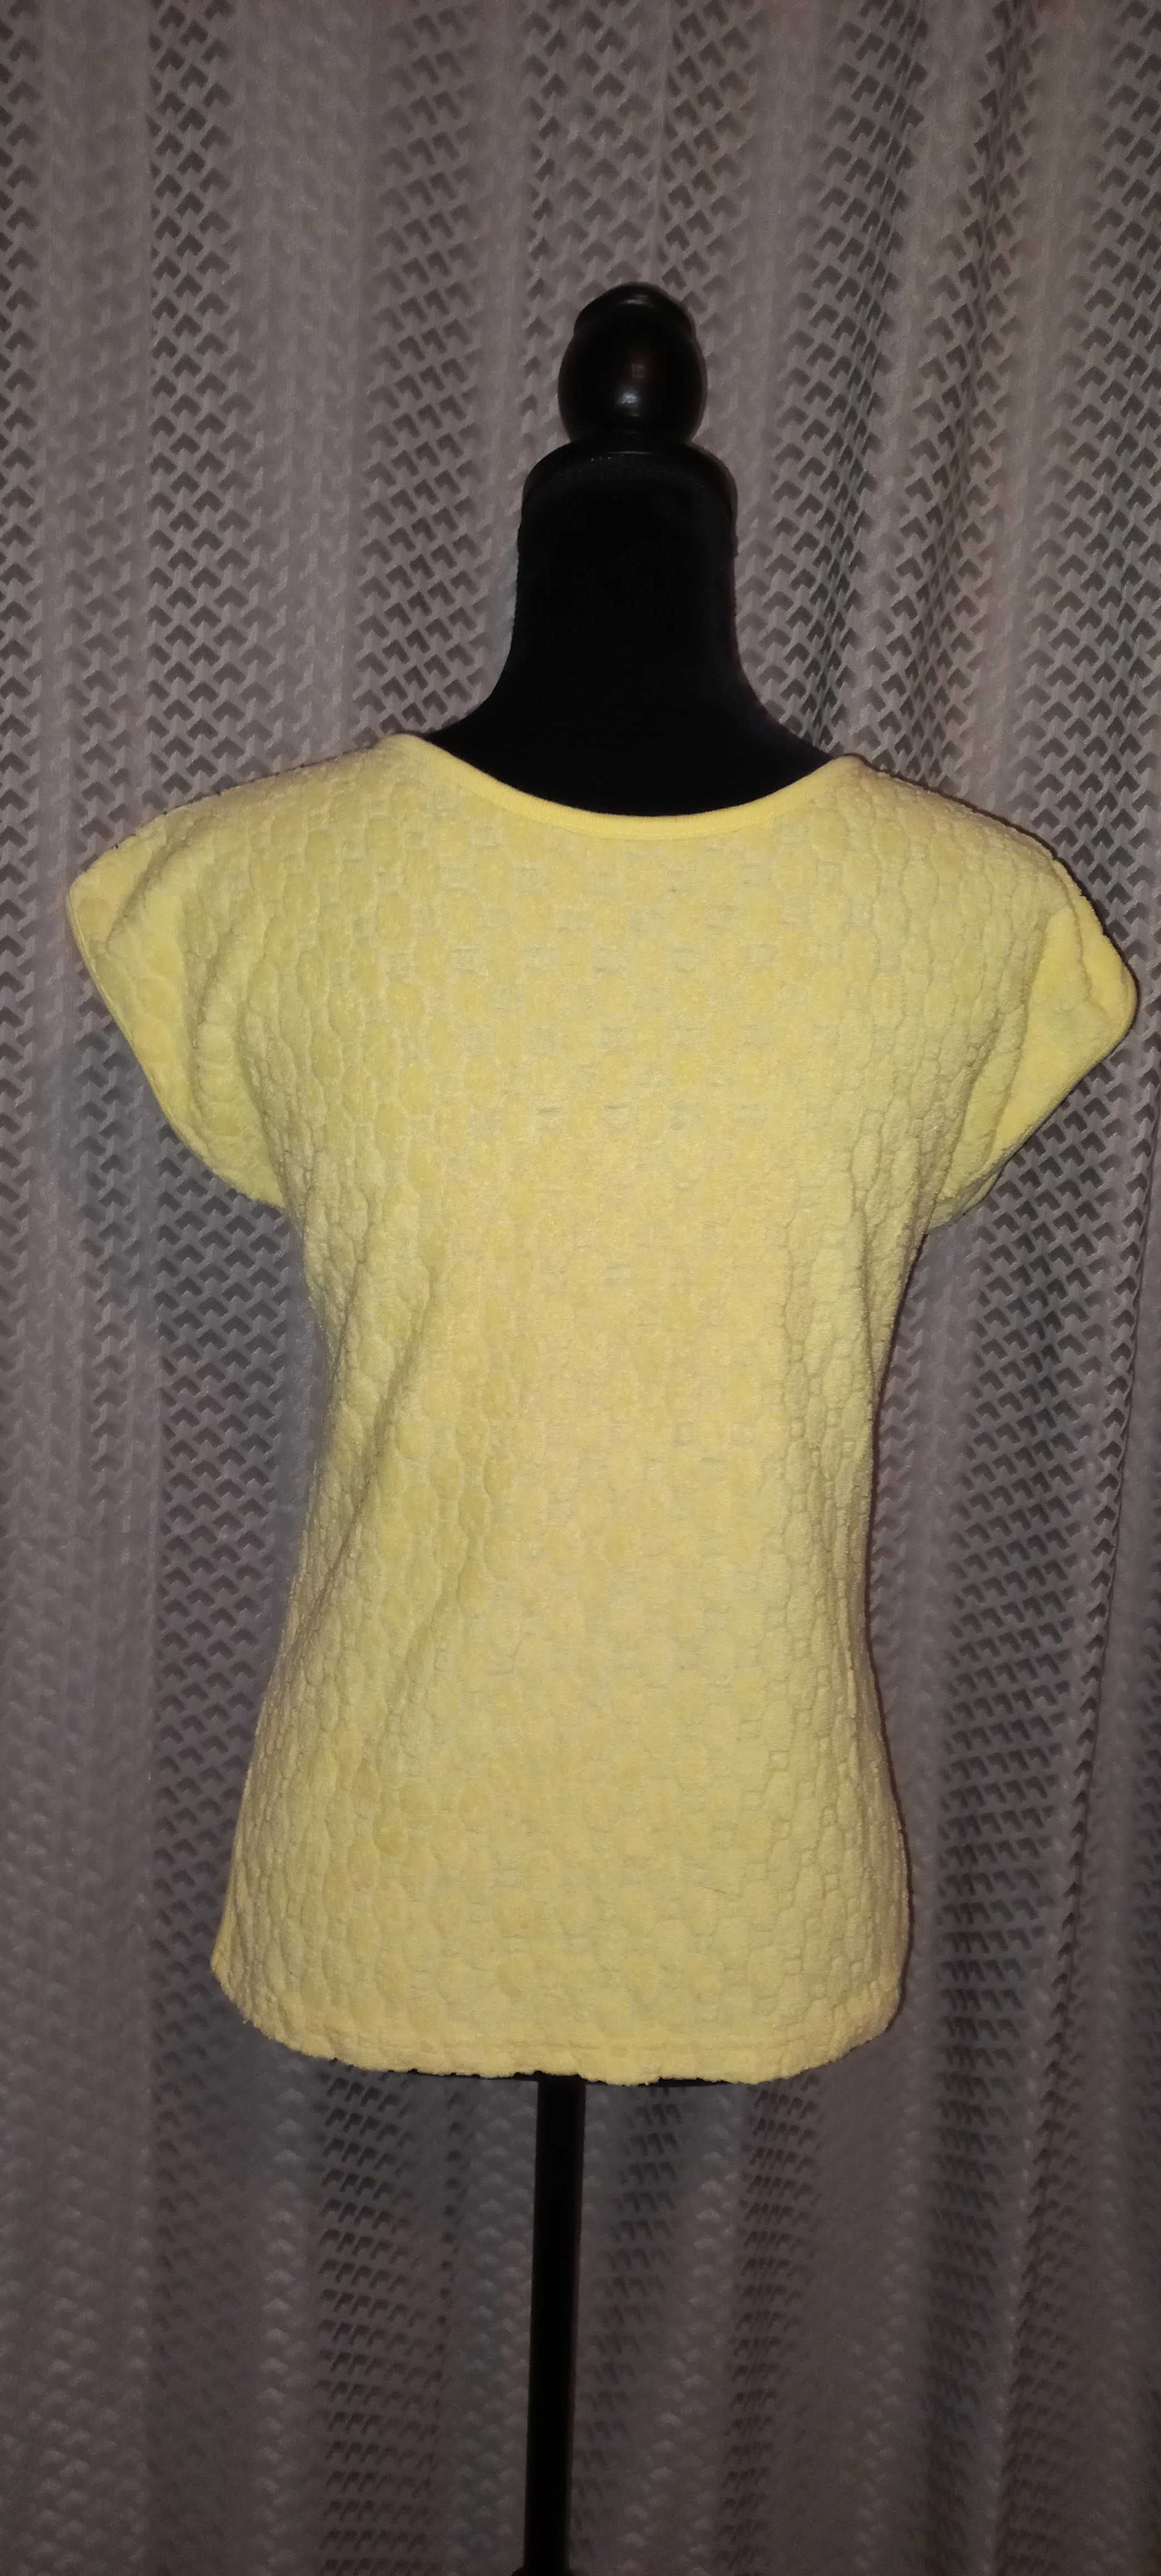 Cytrynowa żółta bluzka koszulka top bez rękawów frotte Vintage 40